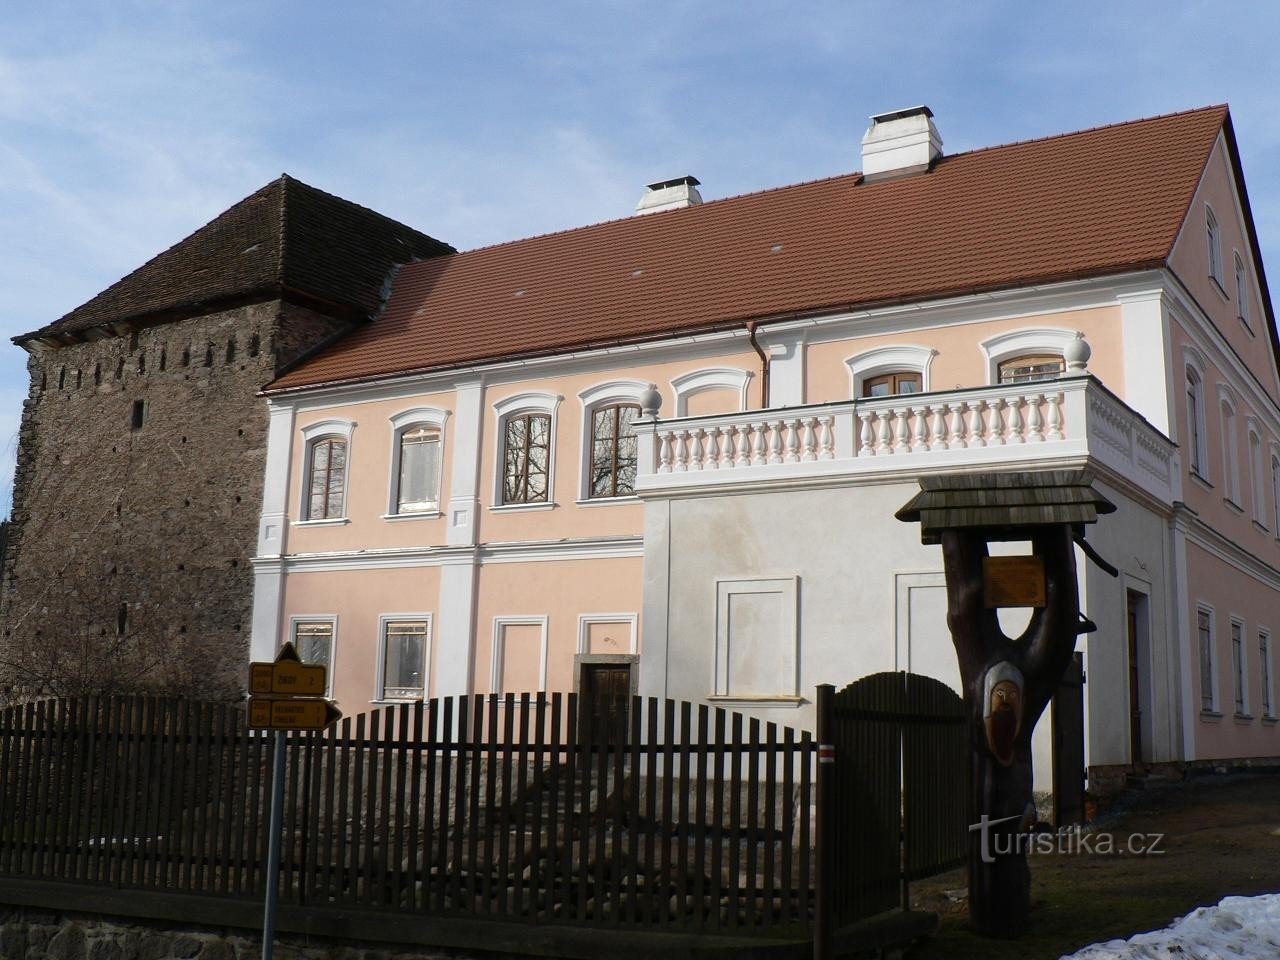 Svojšice, lâu đài và pháo đài